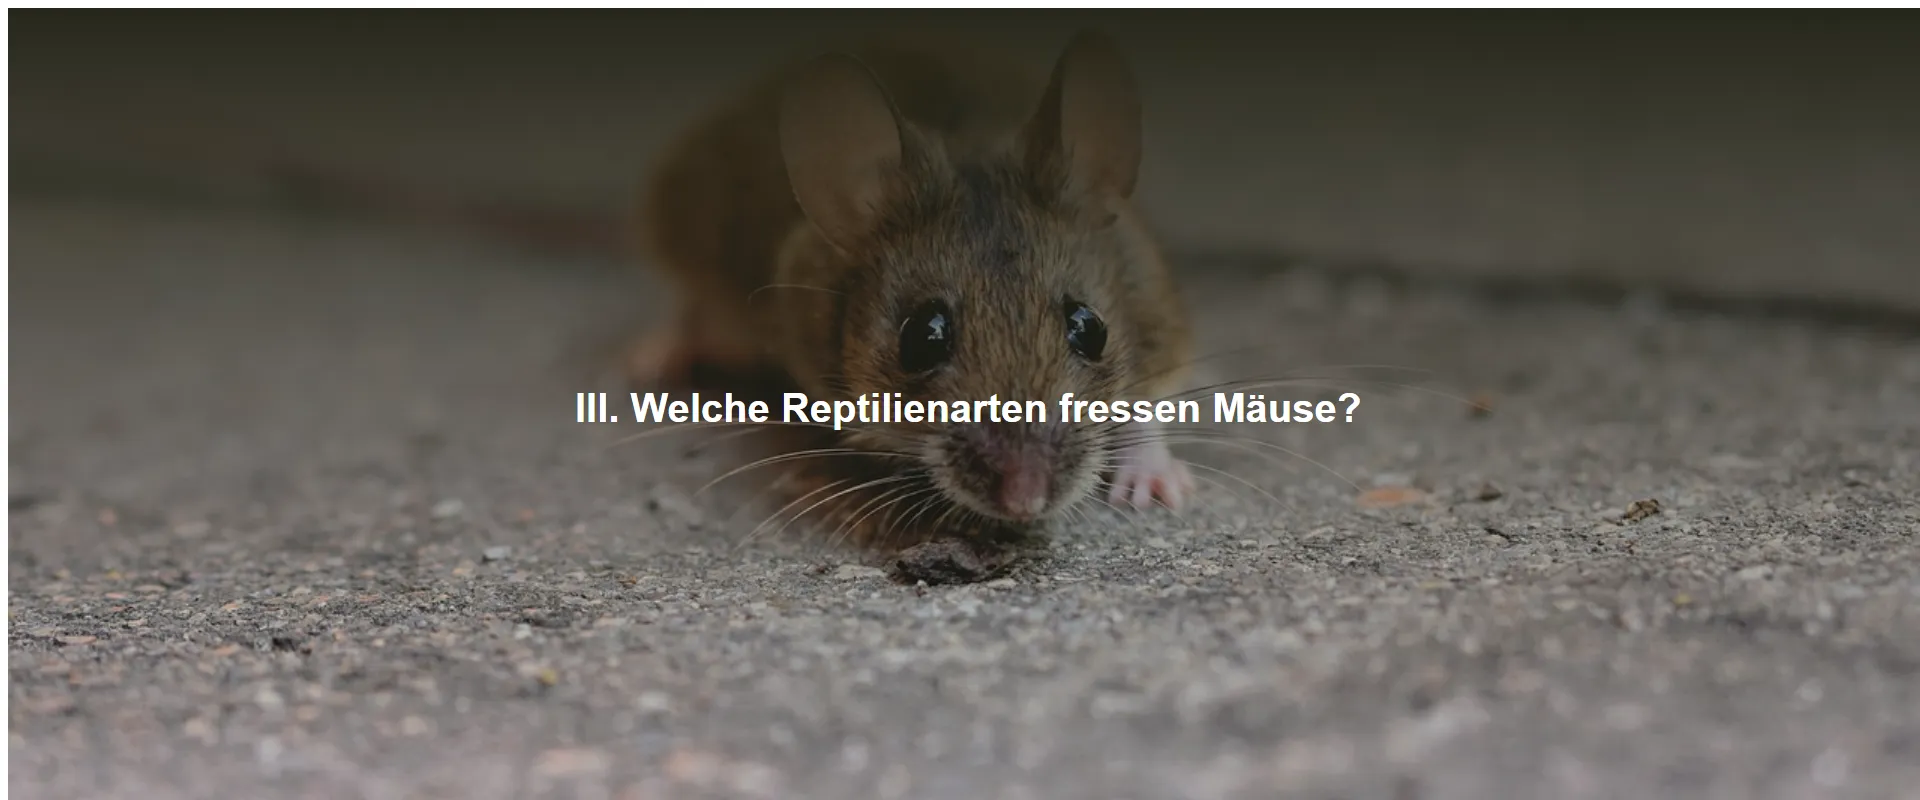 Welche Reptilienarten fressen Mäuse?